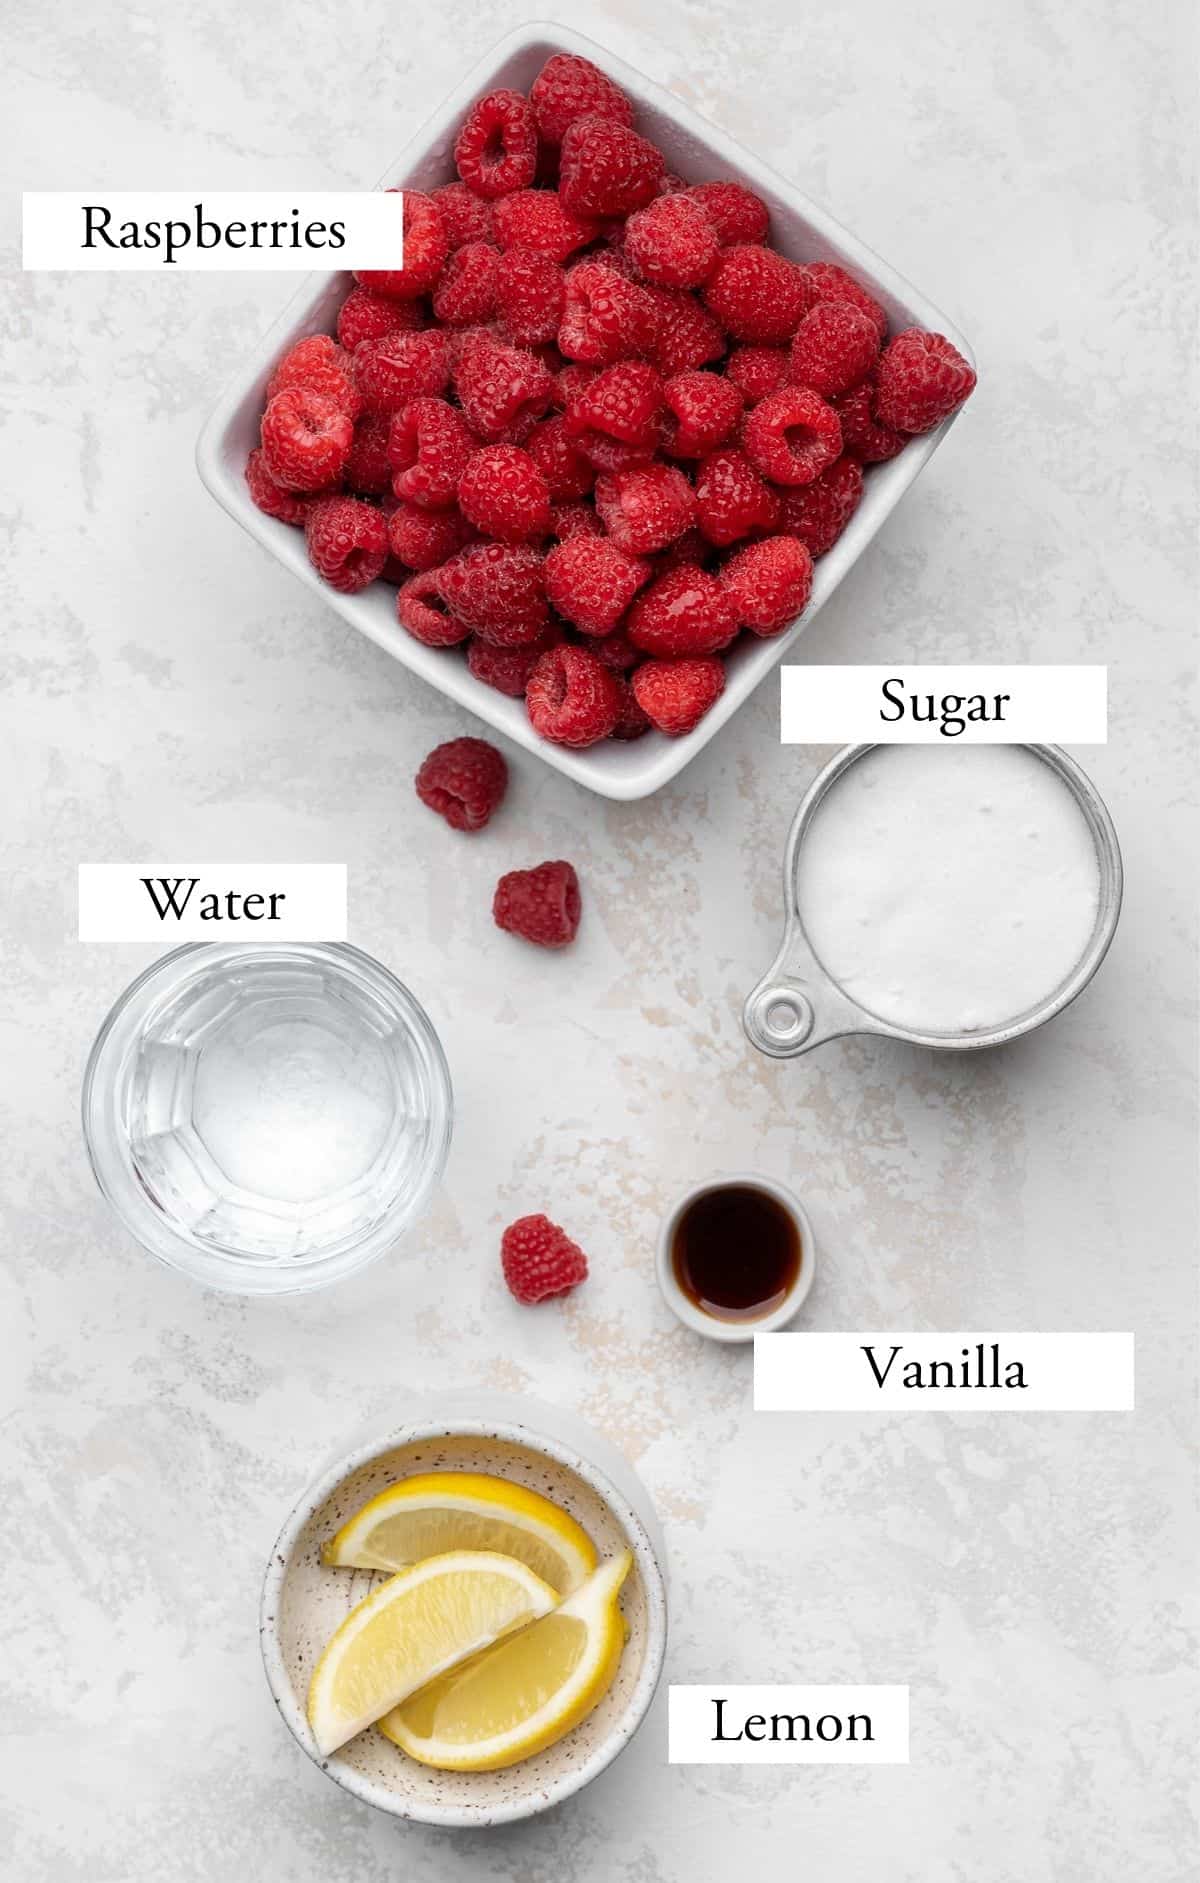 Ingredients for raspberry sorbet - raspberries, lemon, sugar, water, and vanilla